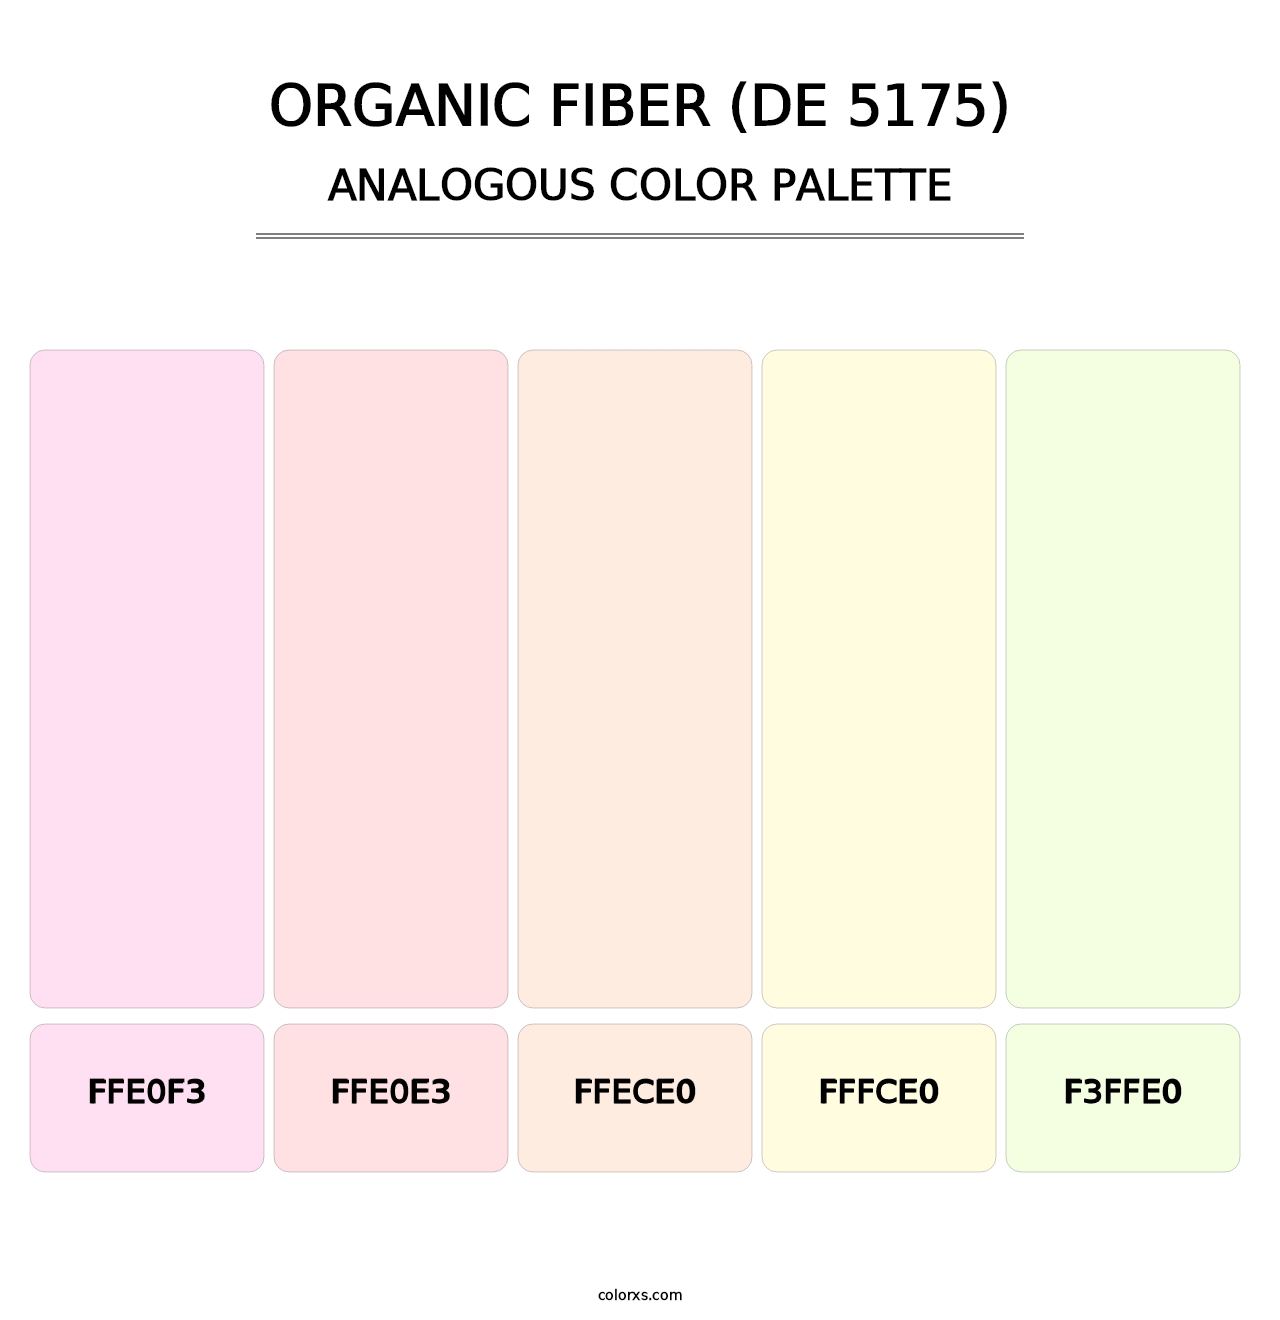 Organic Fiber (DE 5175) - Analogous Color Palette